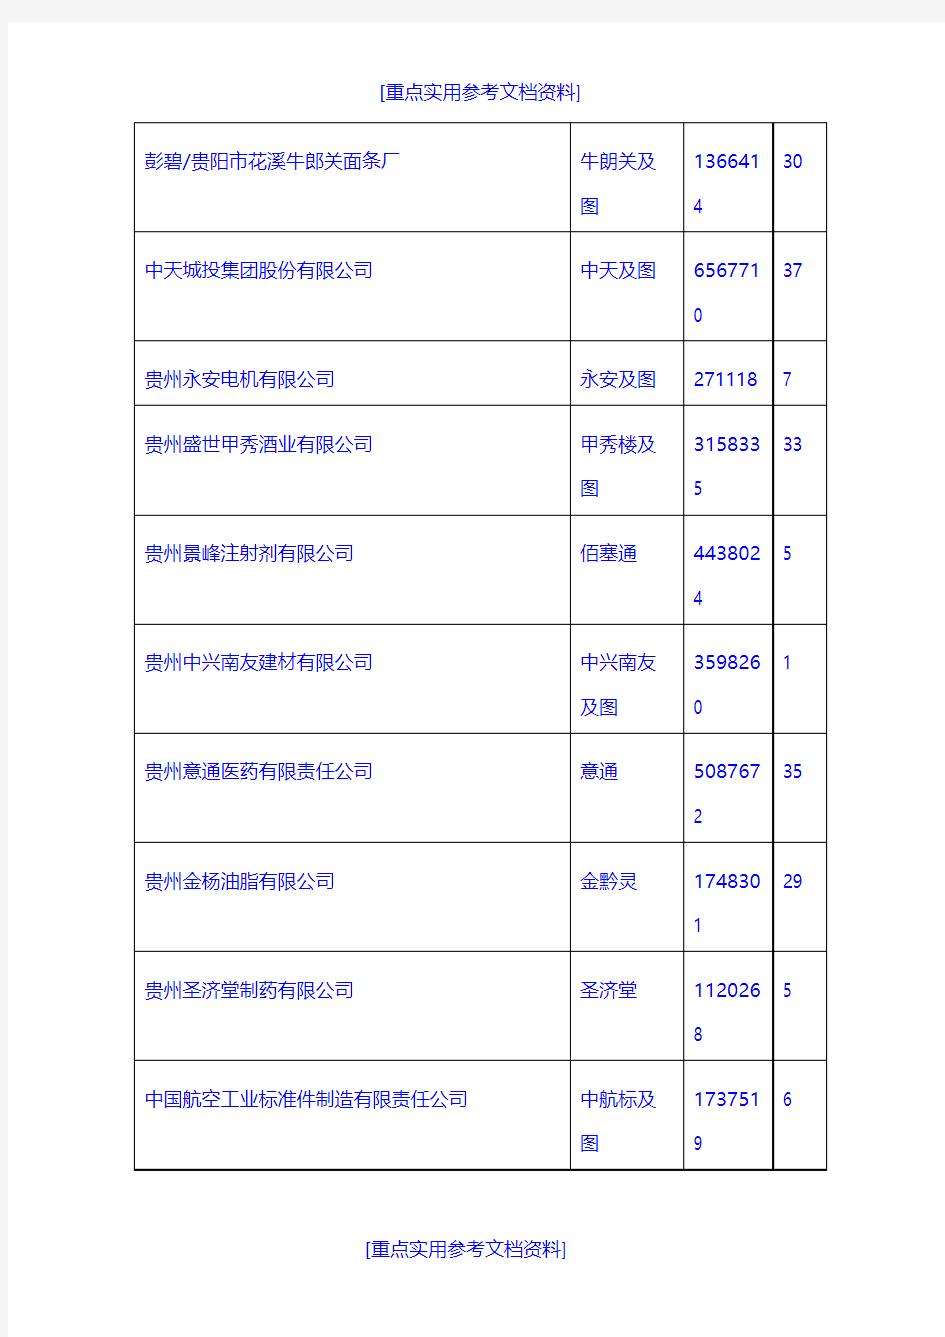 [实用参考]2018年获得贵州省著名商标认定的企业名单.doc